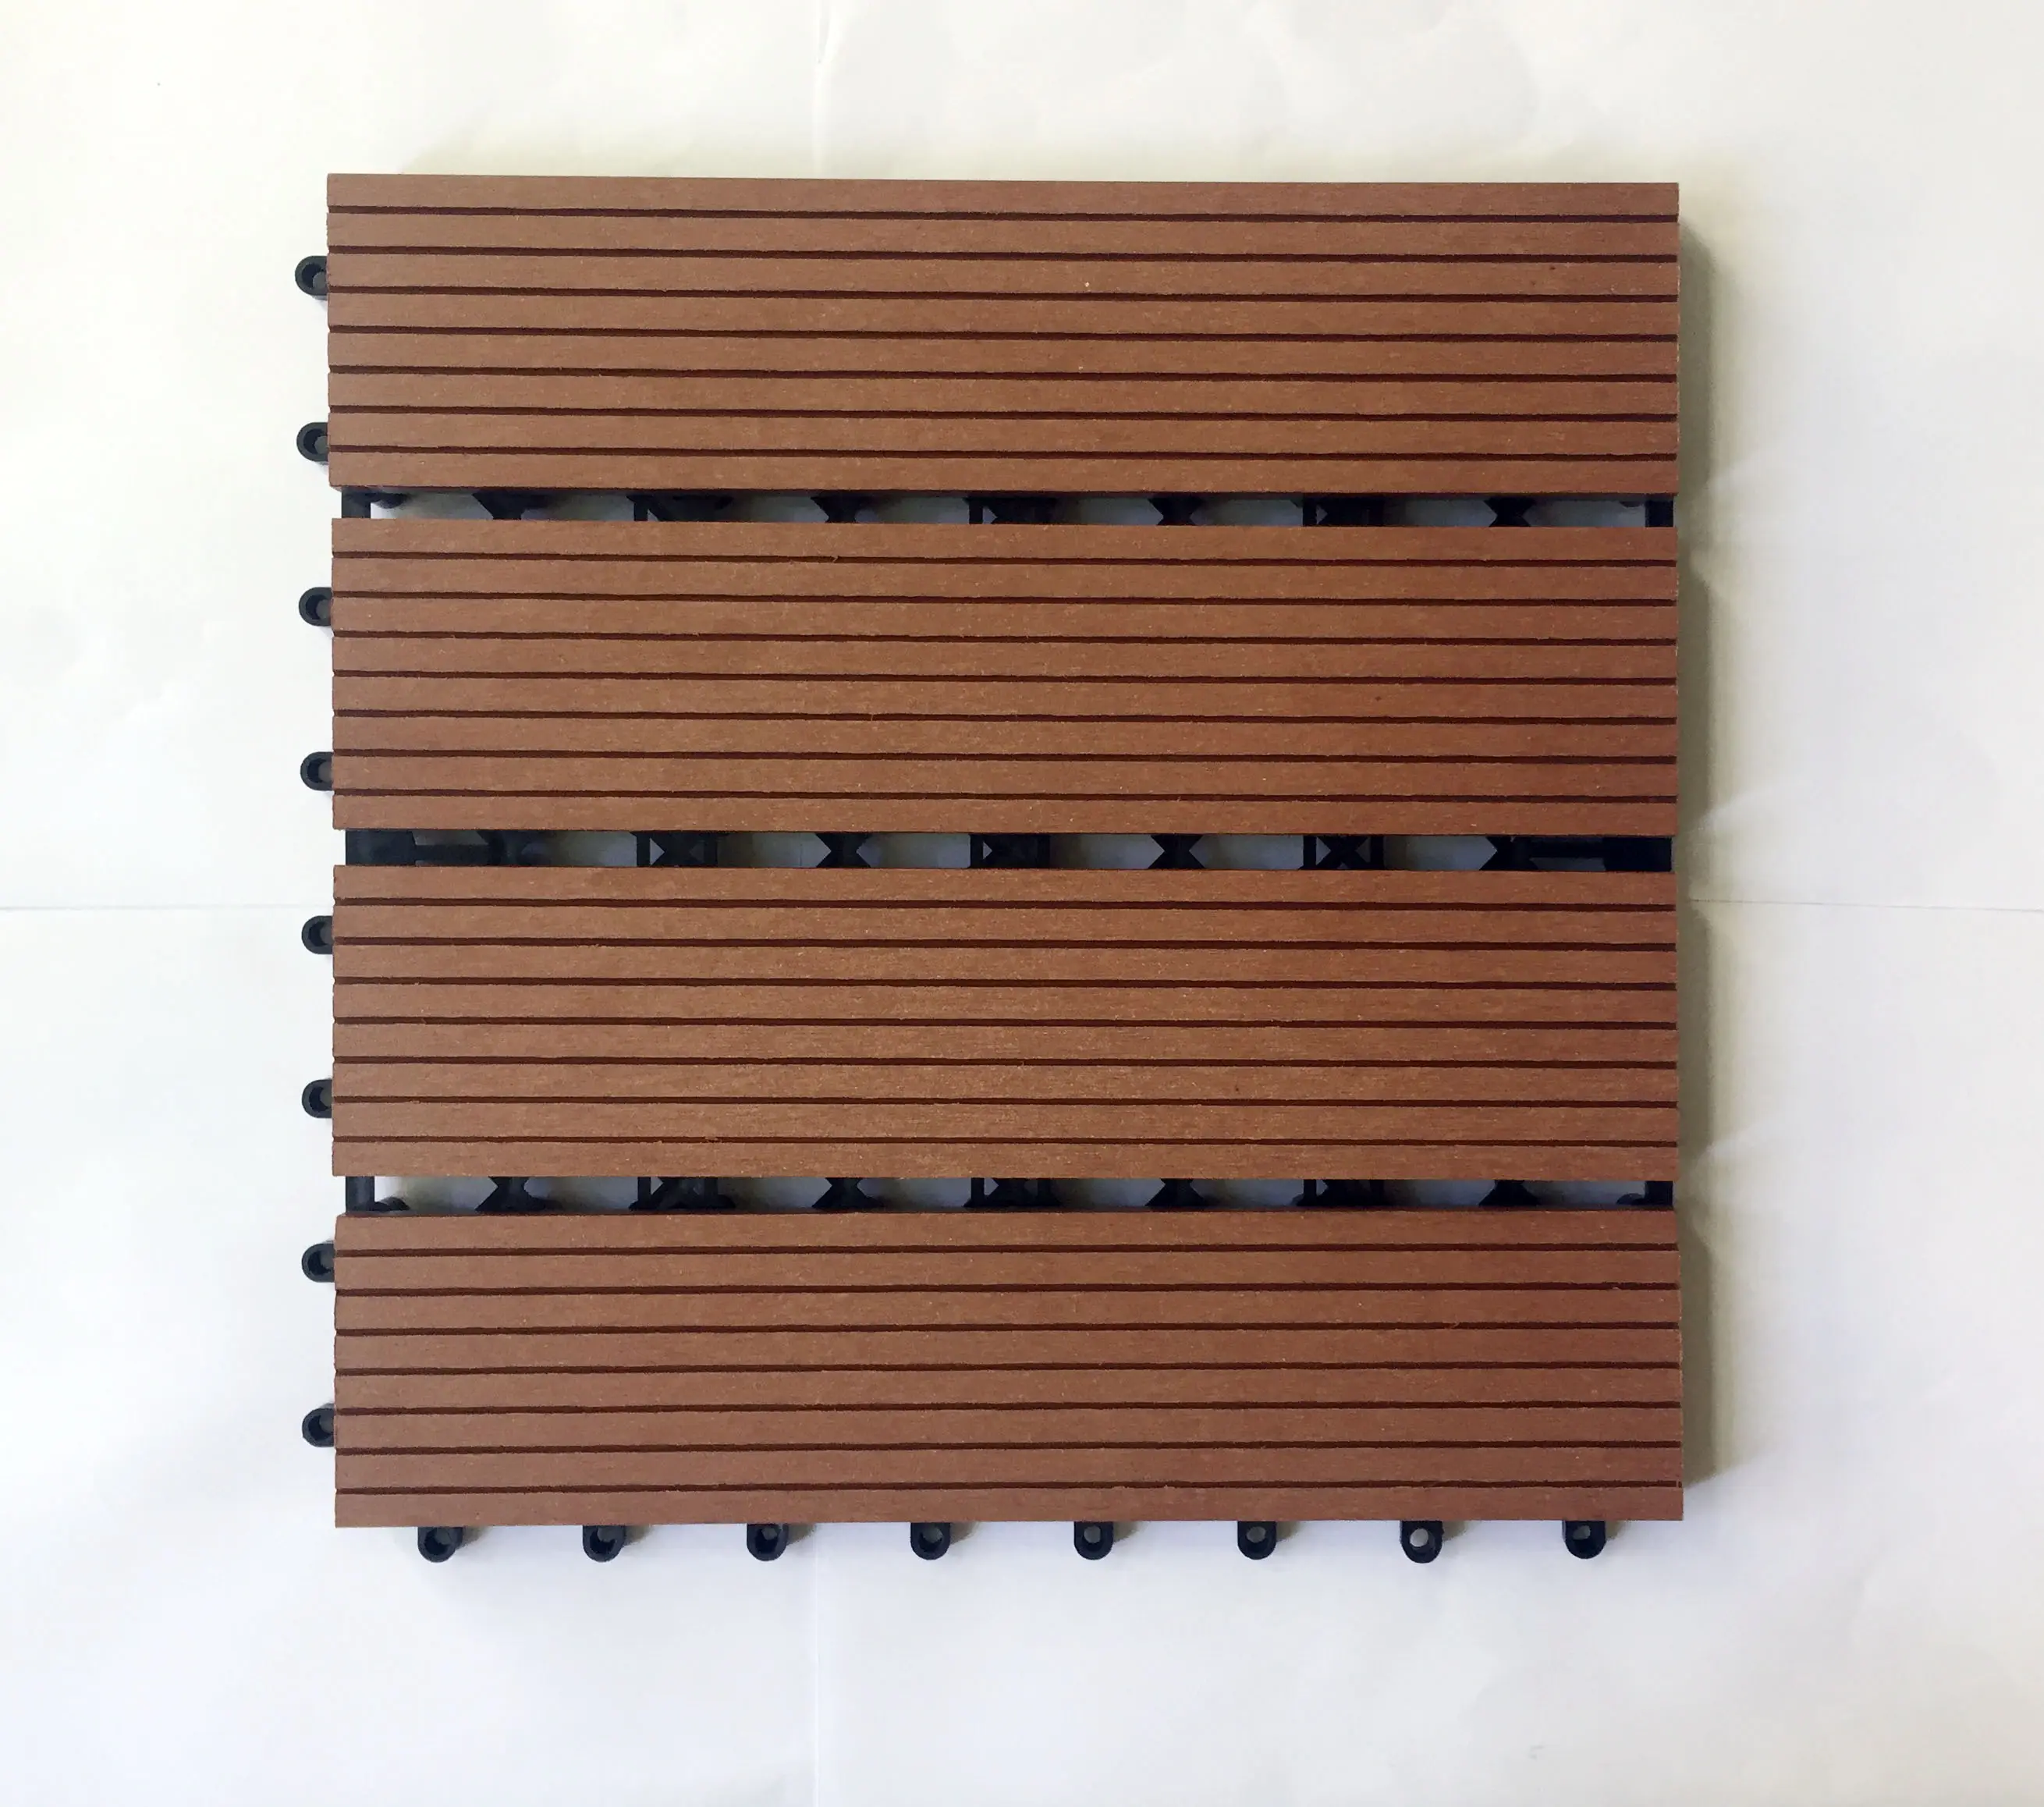 床タイルwpcインターロッキングデッキ屋外木材プラスチック複合加工寄木細工